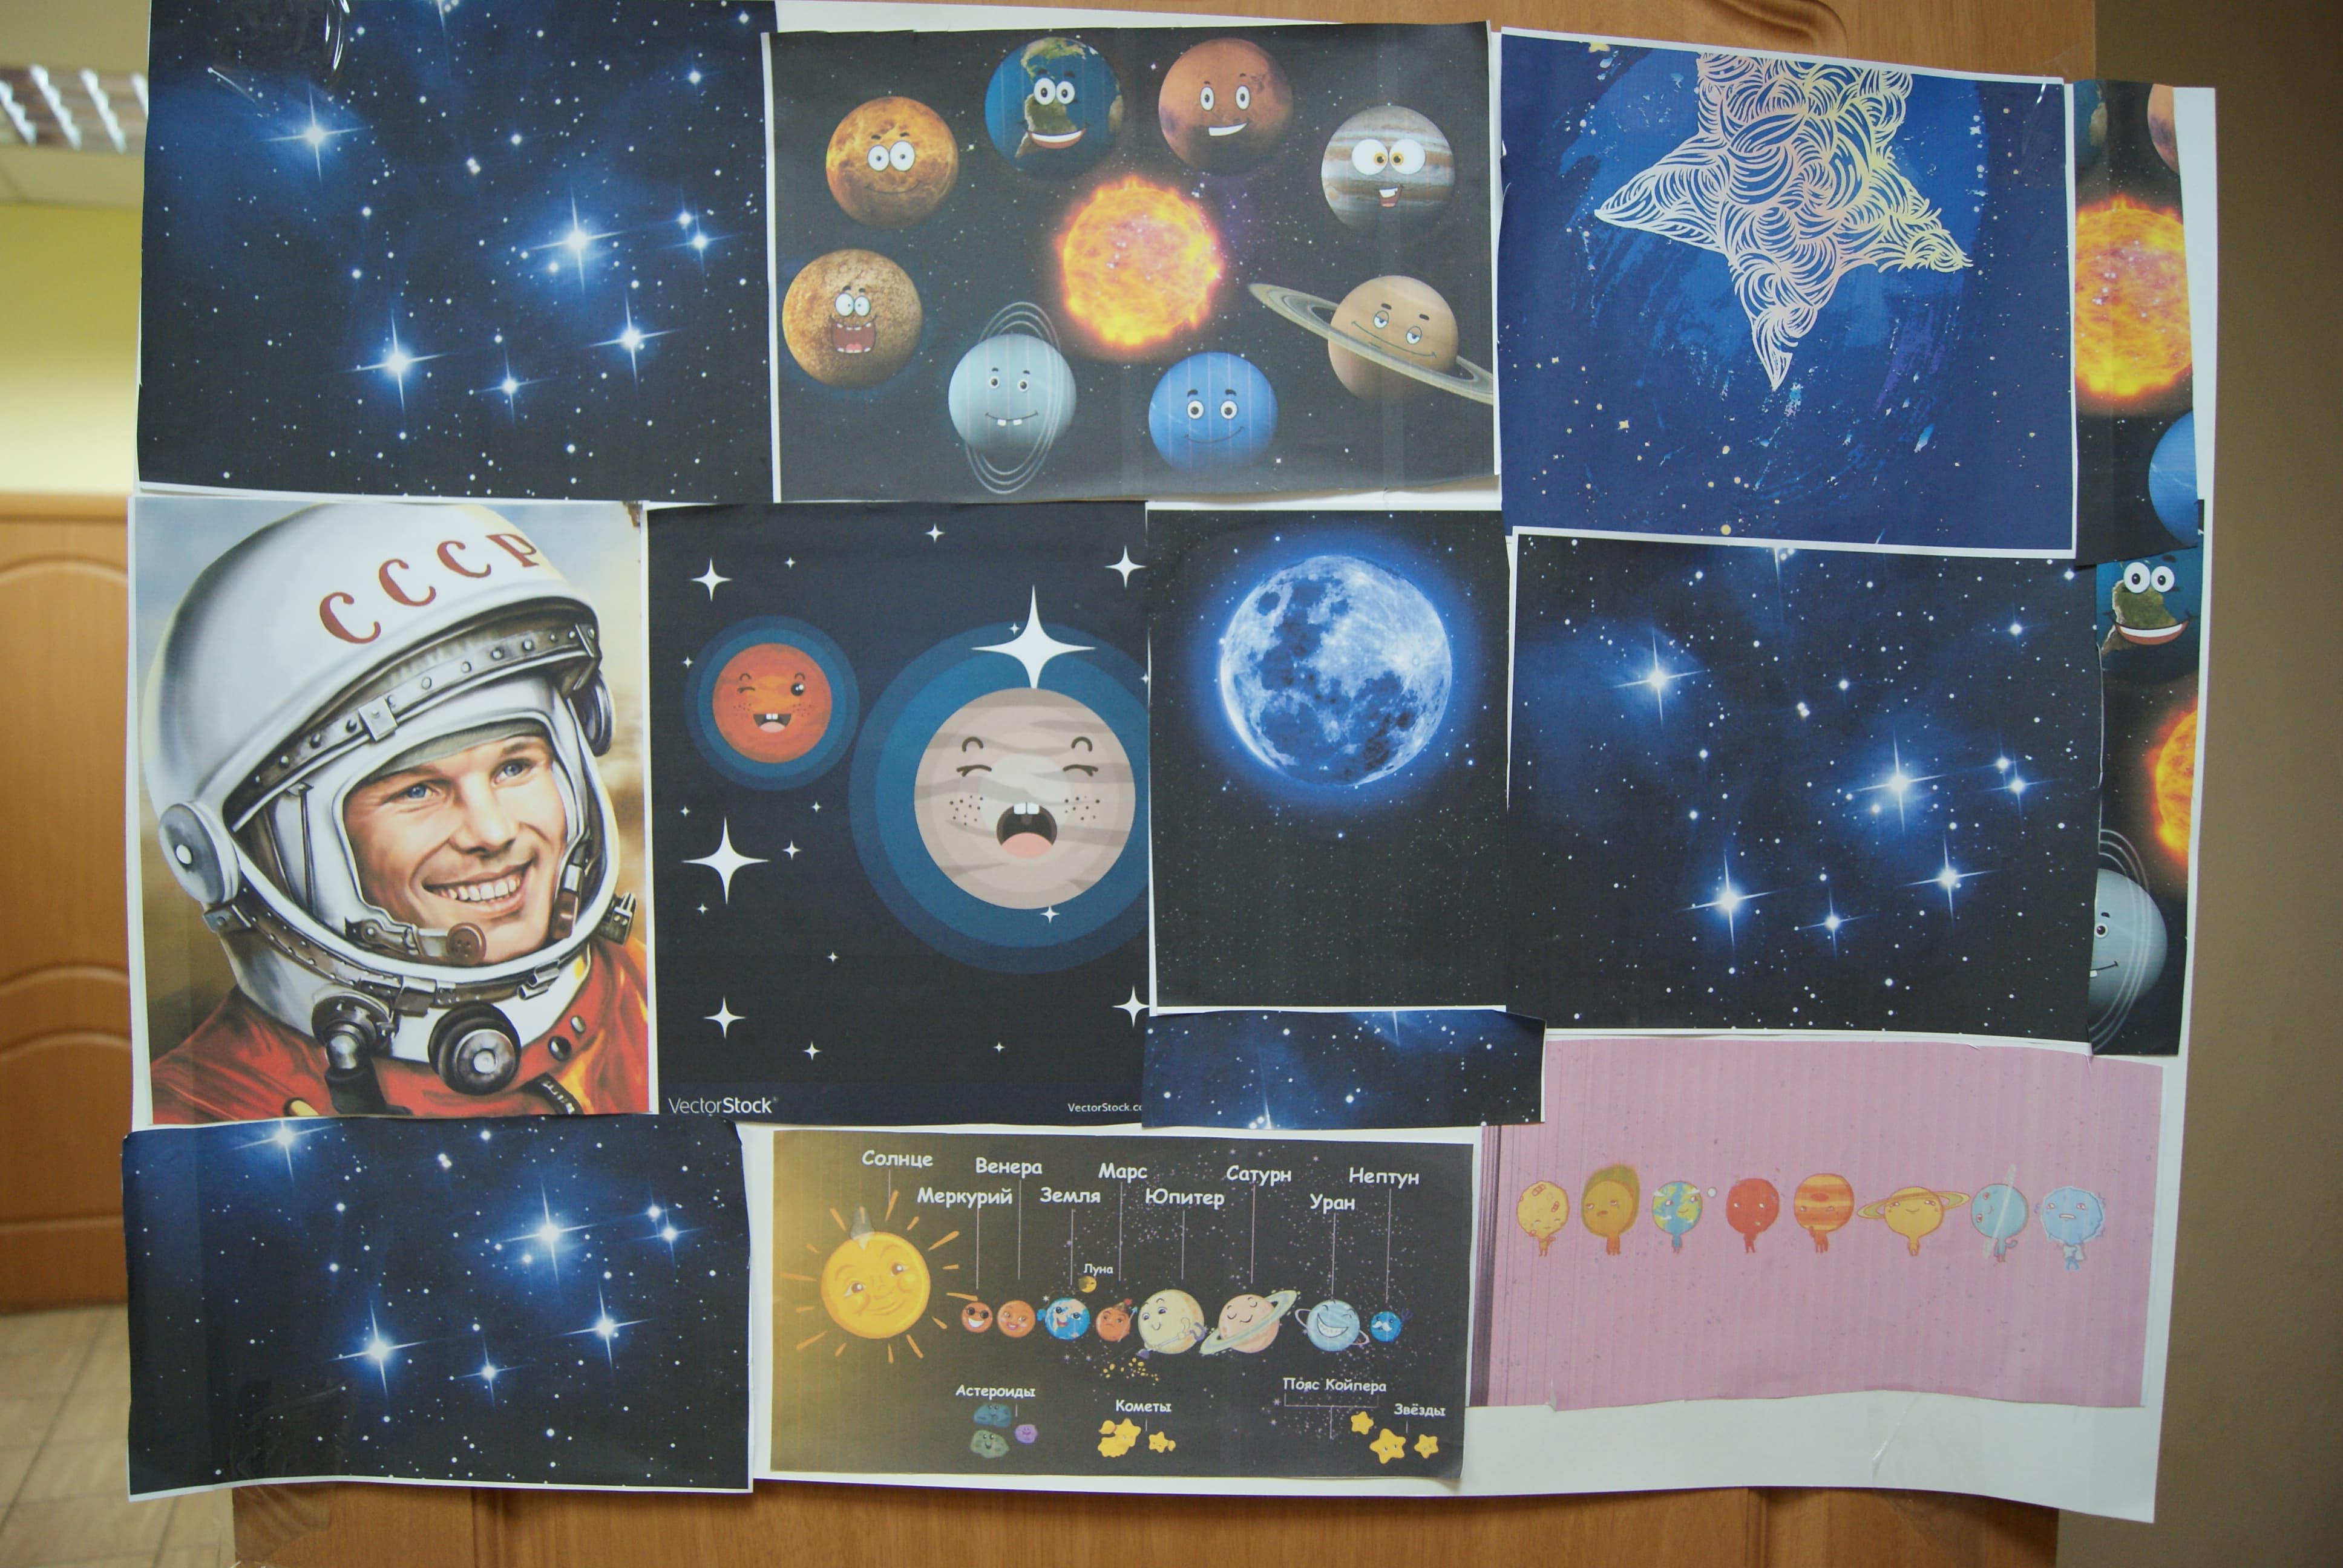 Оформление стенда ко дню космонавтики. Плакат "день космонавтики". Идеи для плаката на день космонавтики. Плакат ко Дню космонавтики в школе. Стенд ко Дню космонавтики.